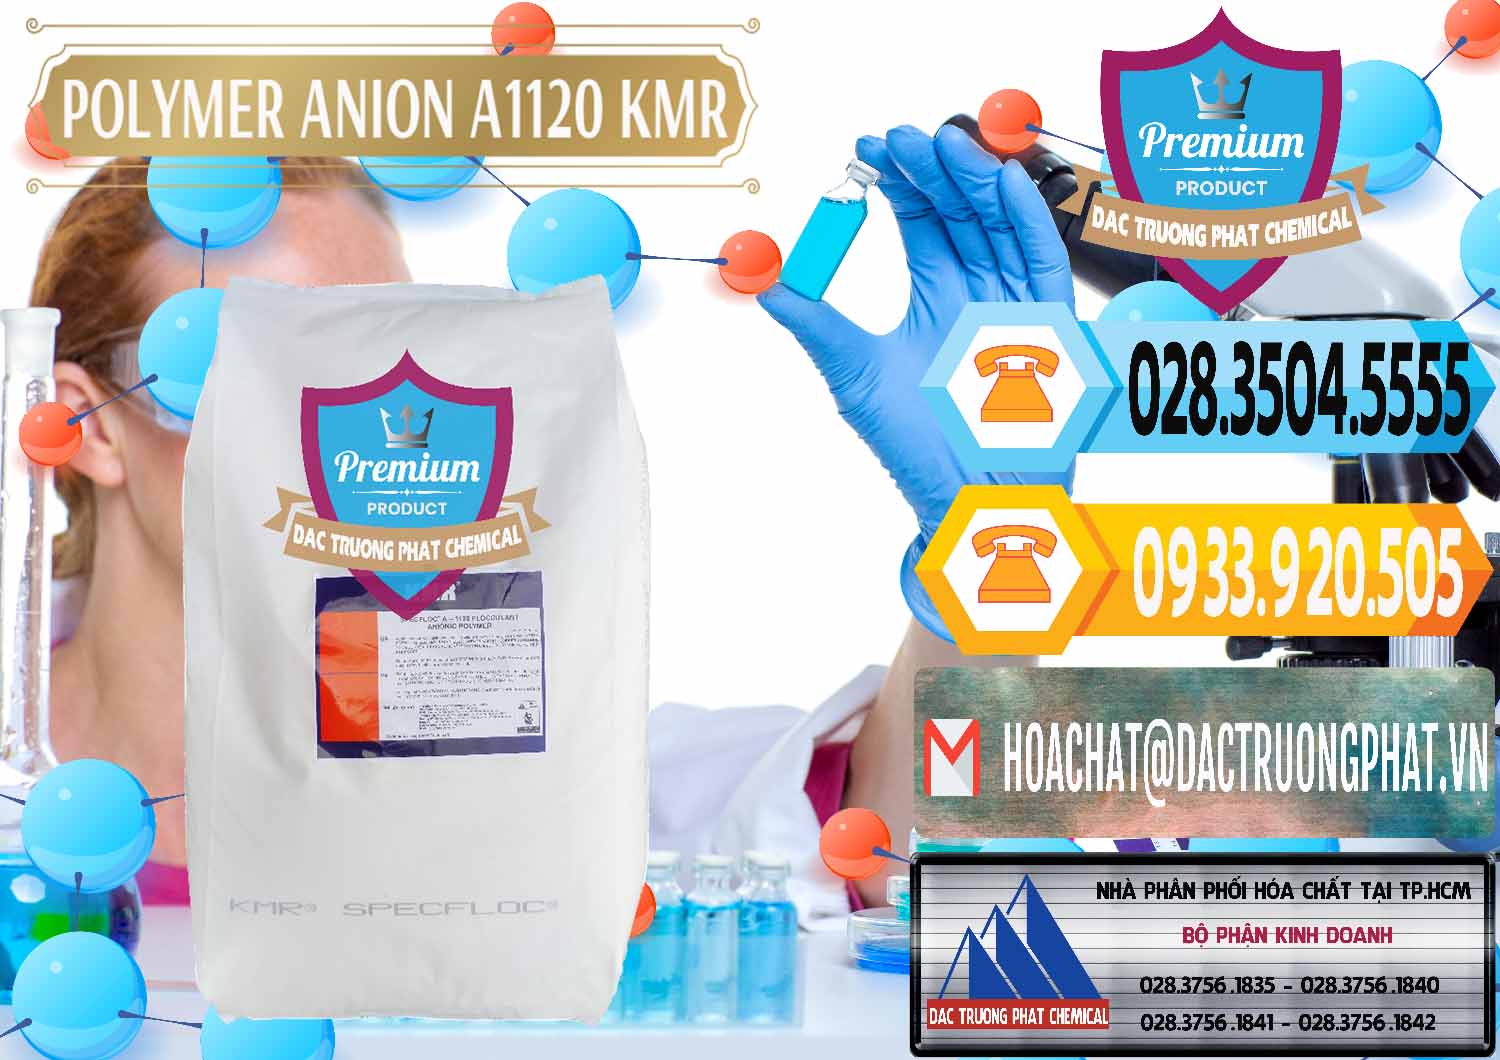 Nơi chuyên phân phối _ bán Polymer Anion A1120 - KMR Anh Quốc England - 0119 - Công ty chuyên cung ứng & phân phối hóa chất tại TP.HCM - hoachattayrua.net